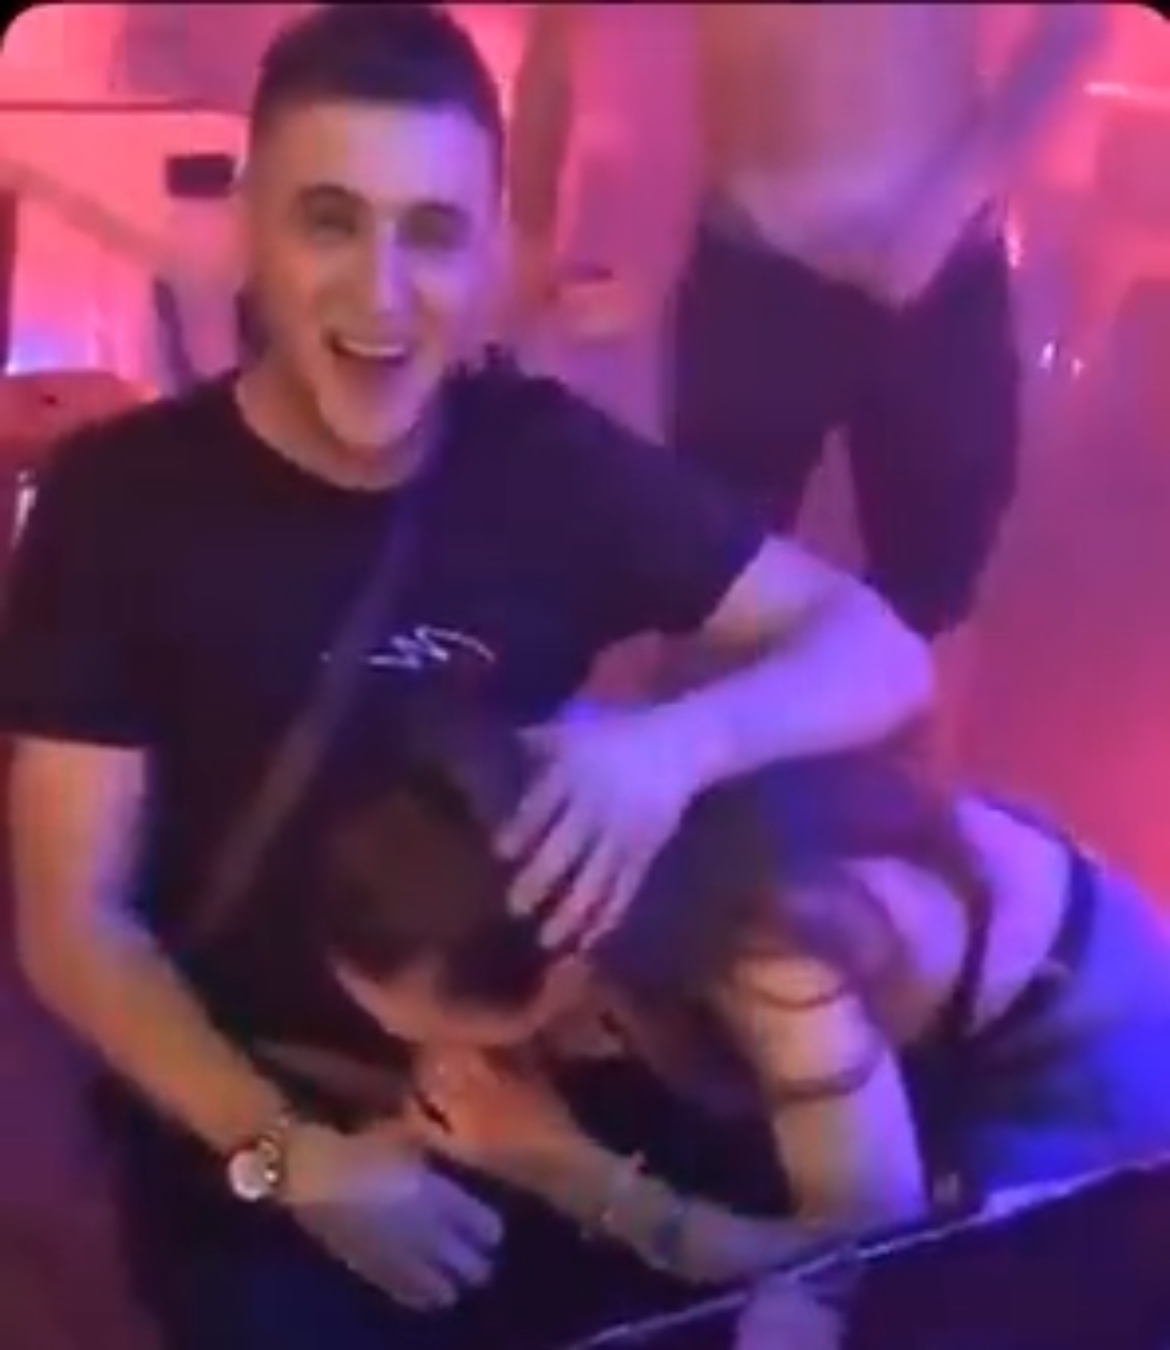 Slut sucking dude’s dick in a club